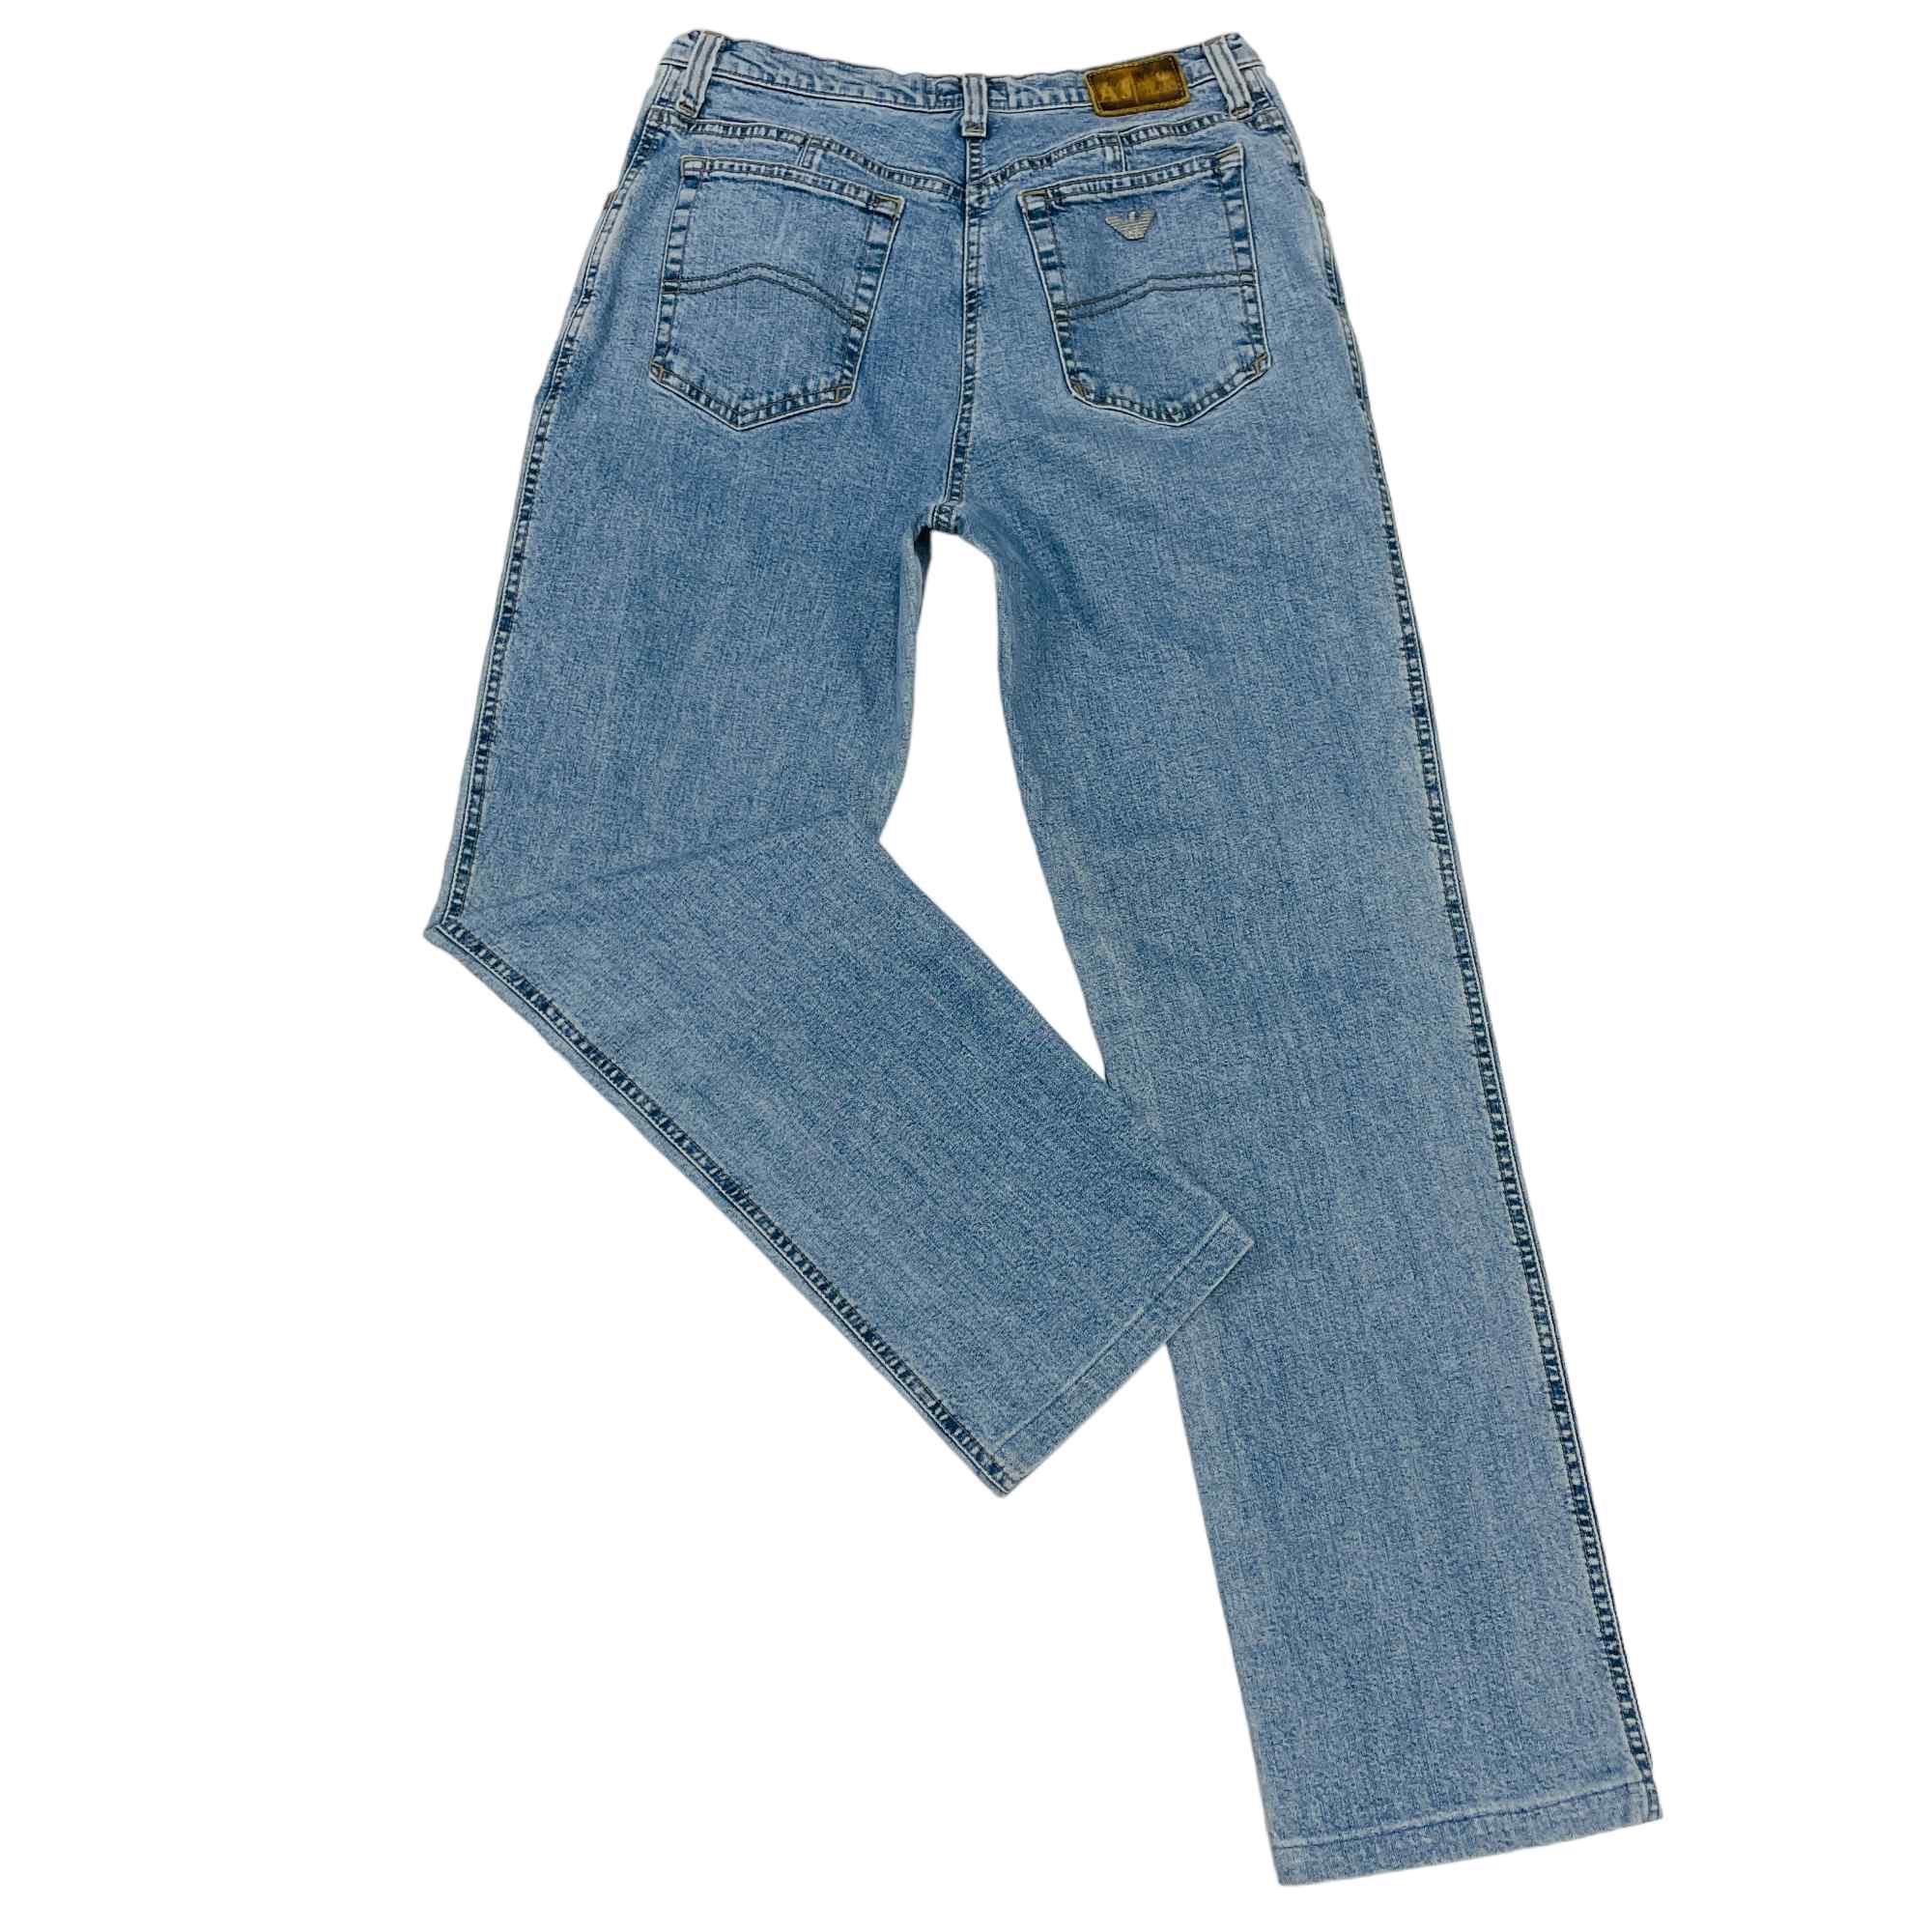 Armani Denim Jeans - W28 L26